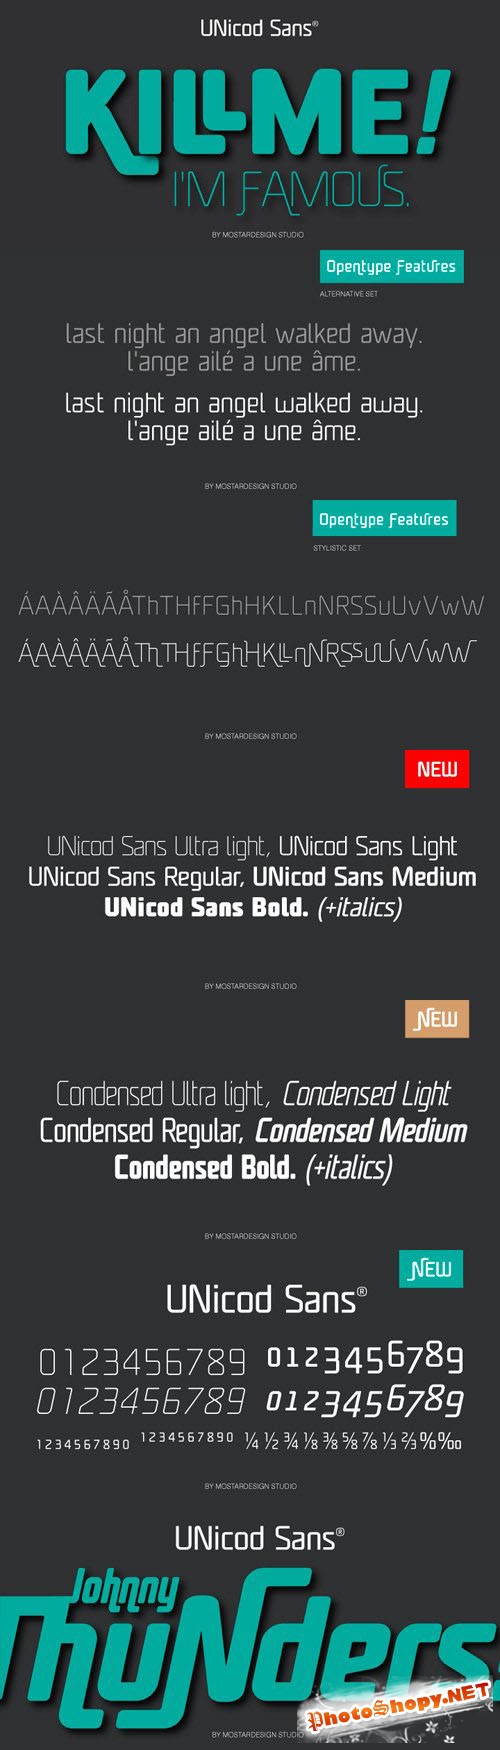 Unicod Sans Font Family - 18 Fonts